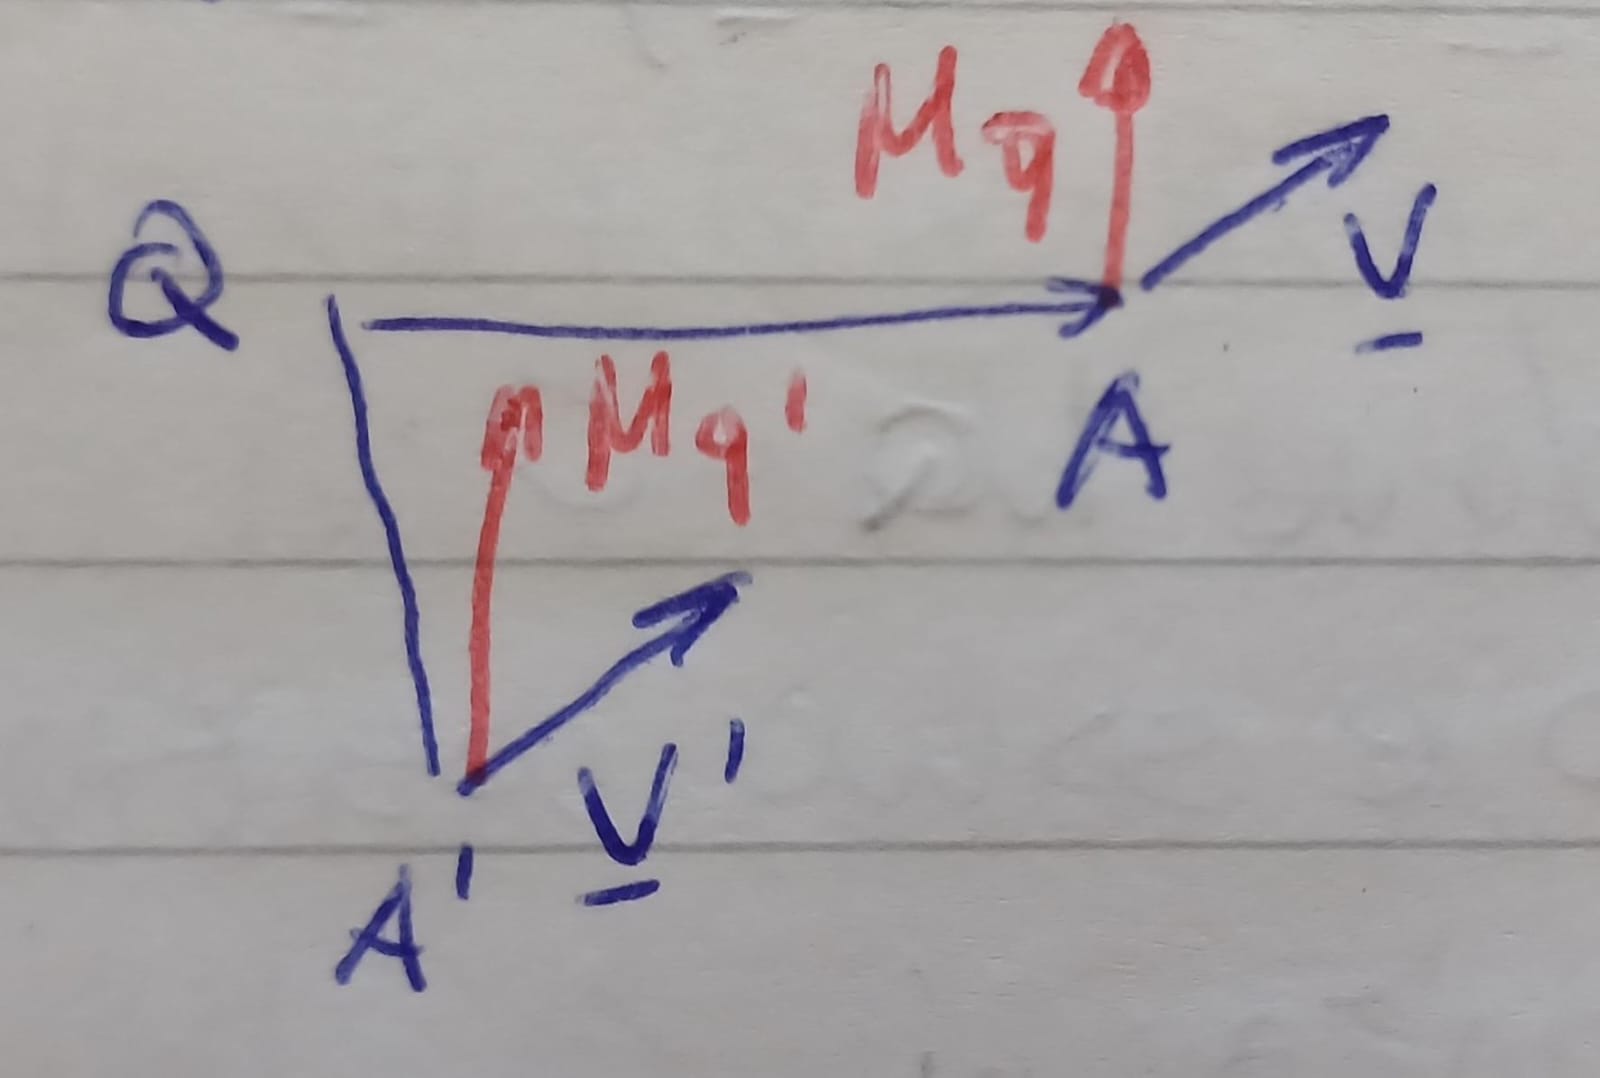 <p>il momento polare di un vettore è definito in funzione di un punto Q, si calcola come <br><strong>M<sub>Q</sub> = QA x v</strong> dove x è il prodotto vettoriale, <br>è un vettore ortonormale al piano individuato da QA e v<br><br>M<sub>Q</sub> é invariante per traslati di v lungo la sua retta di azione </p>